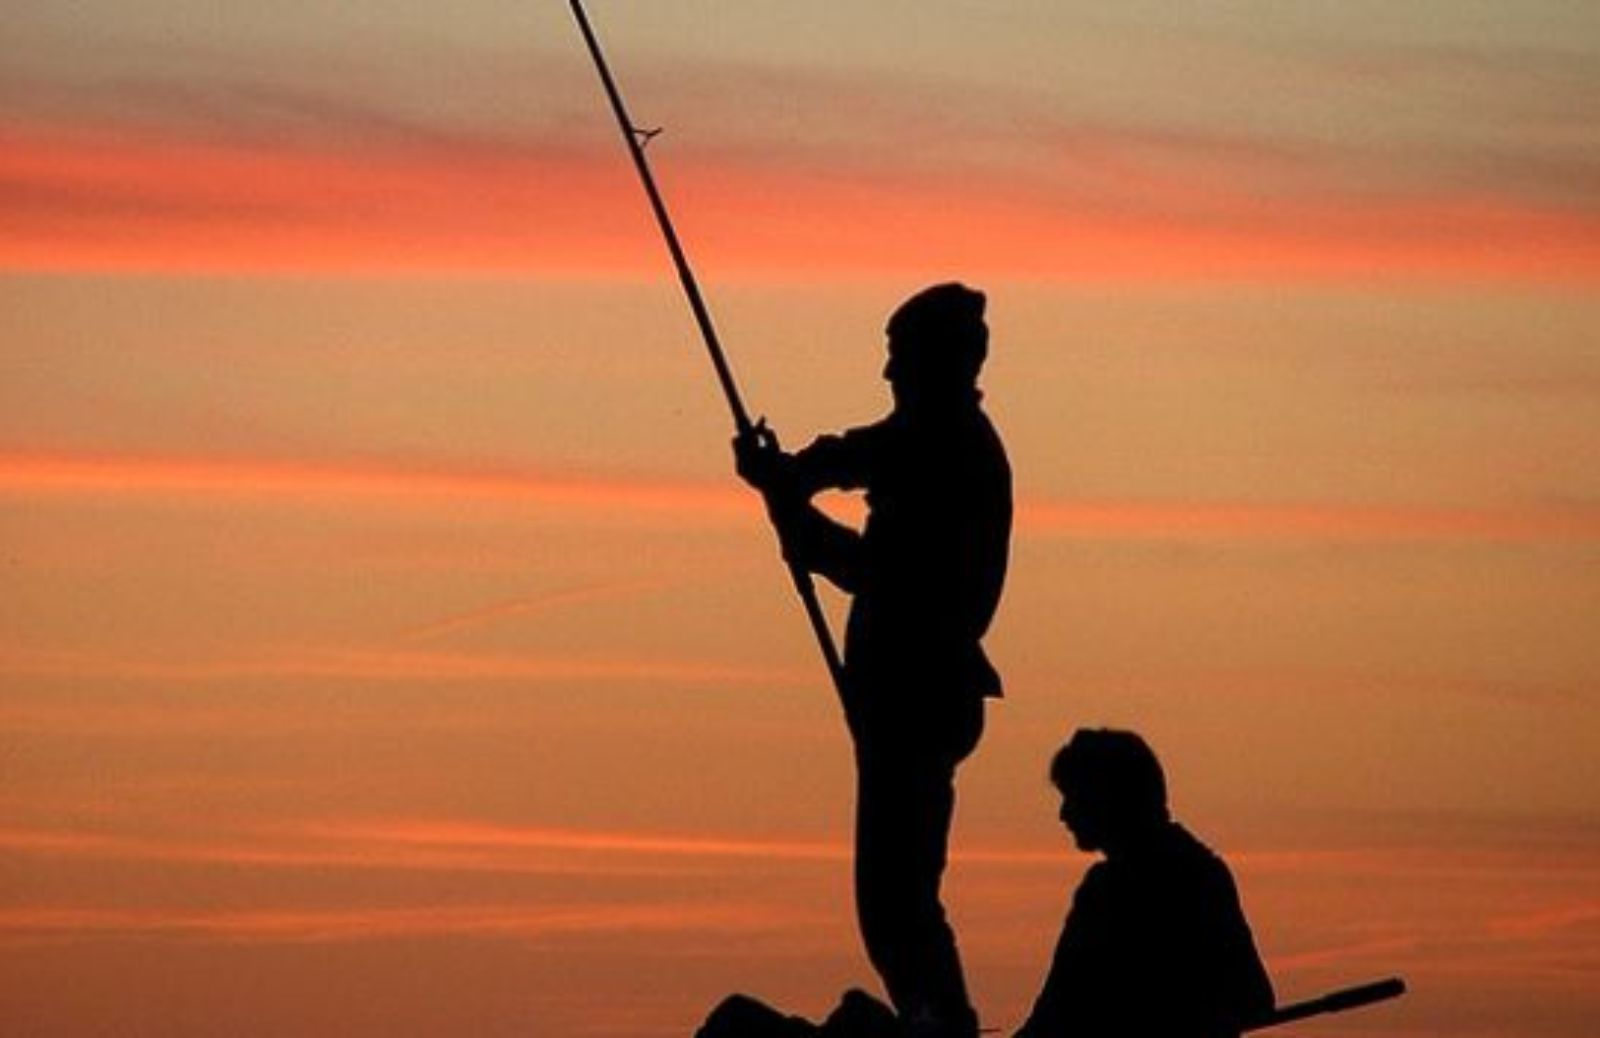 Come funziona la pesca sostenibile: il metodo catch & release